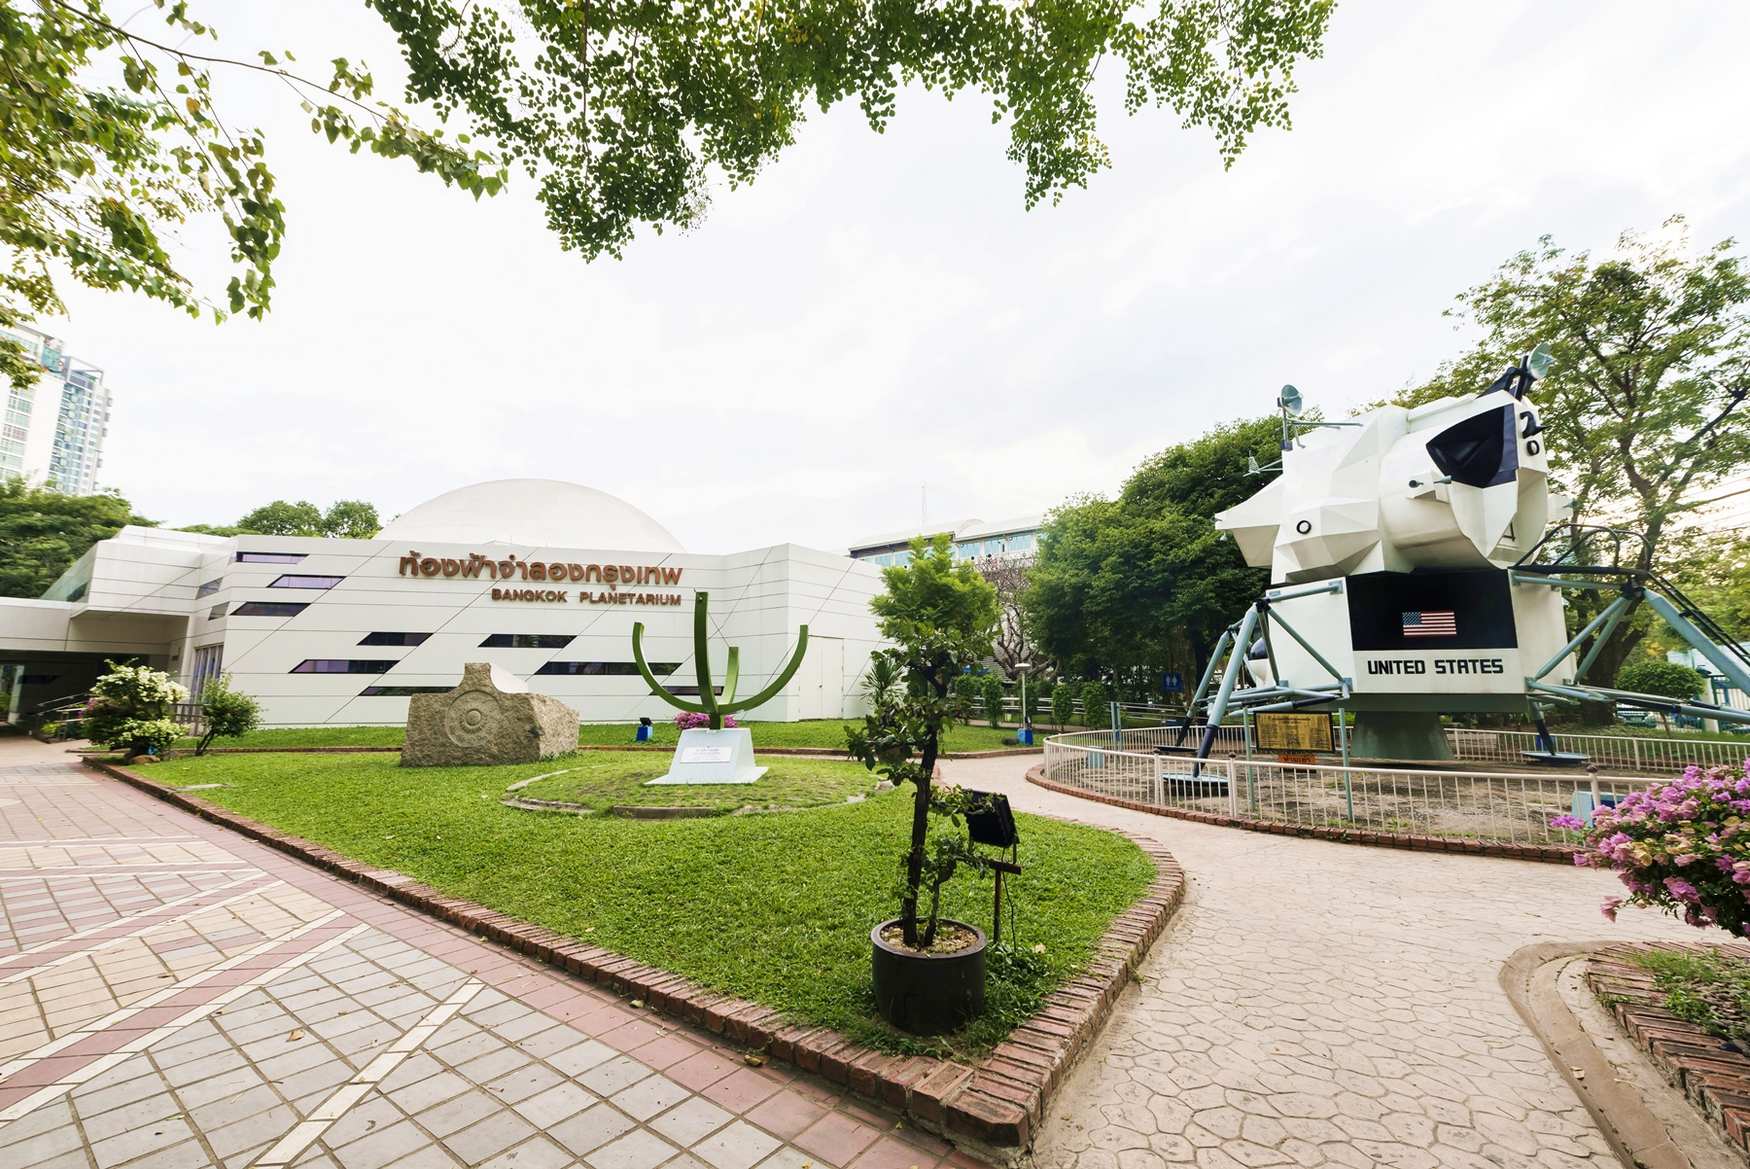 Музей Науки и Планетарий в Бангкоке